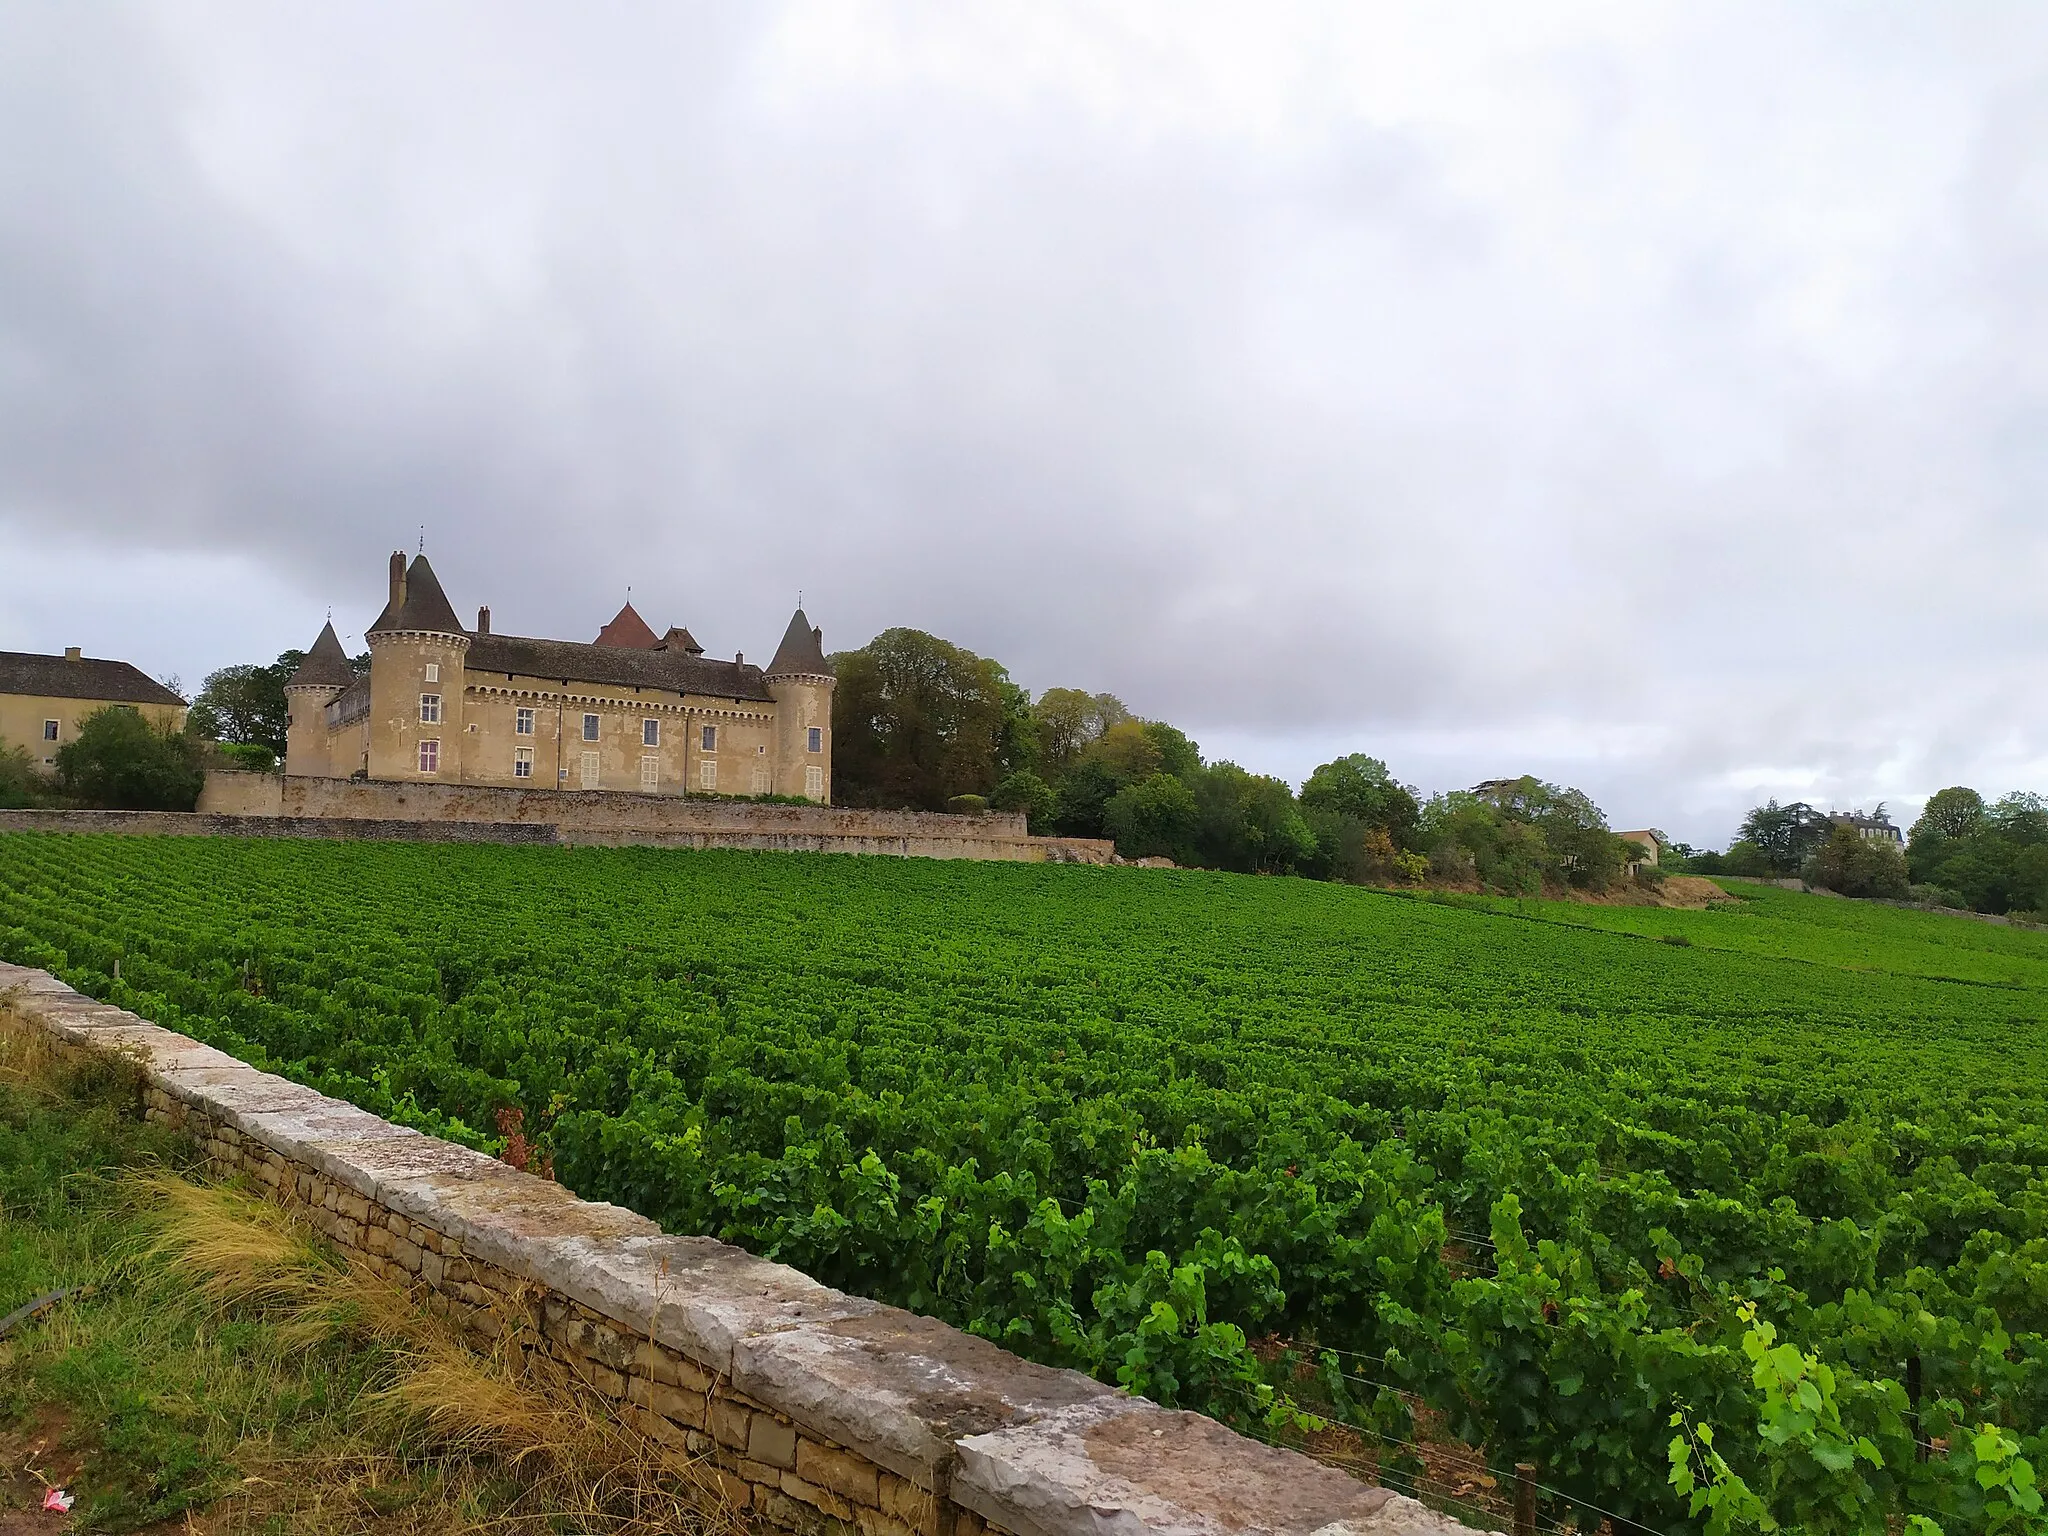 Afbeelding van Bourgogne